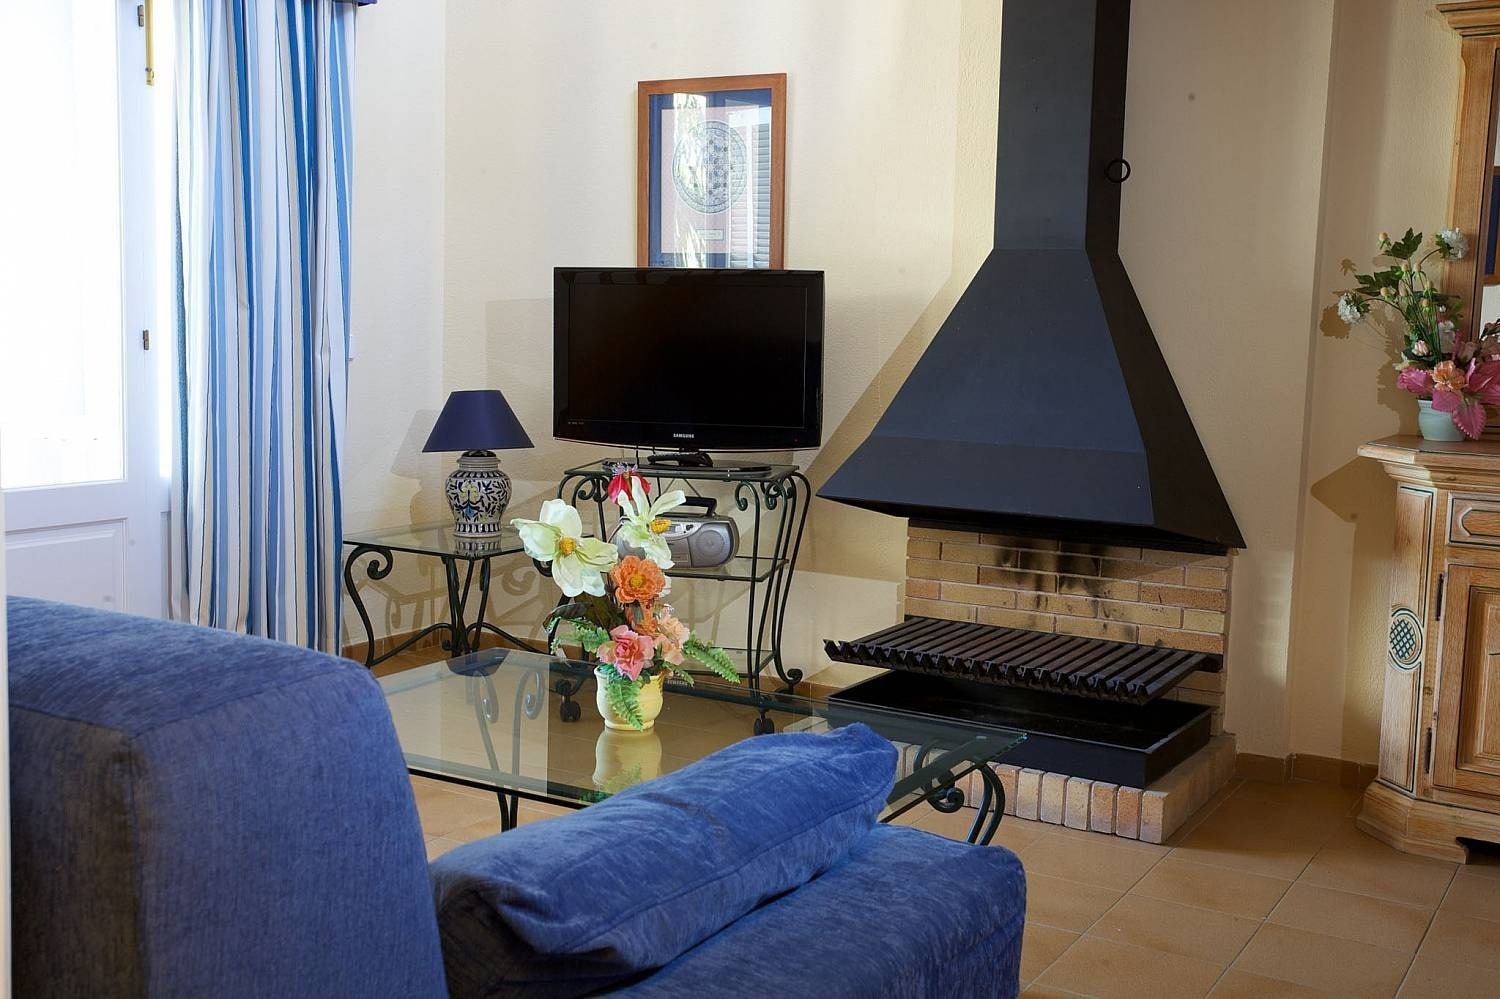 Salón con chimenea del hotel Ona Cala Pi, en Mallorca